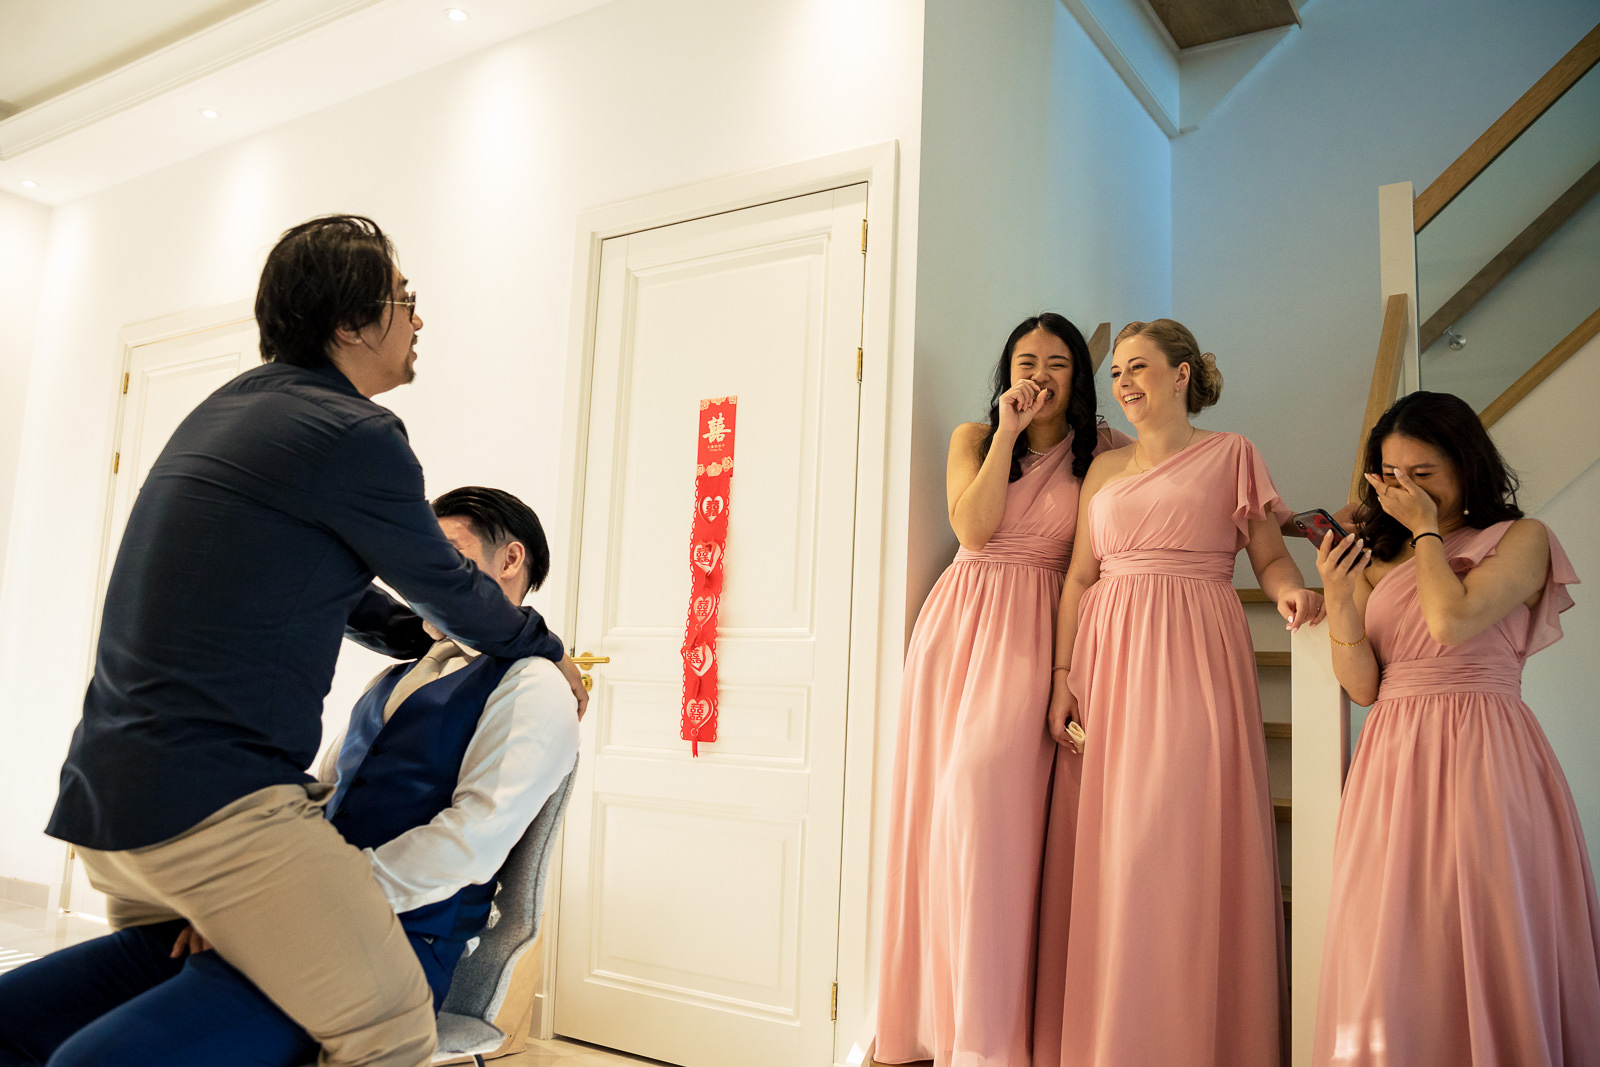 Trouwfotograaf Chinese bruiloft lapdance deurspelletjes